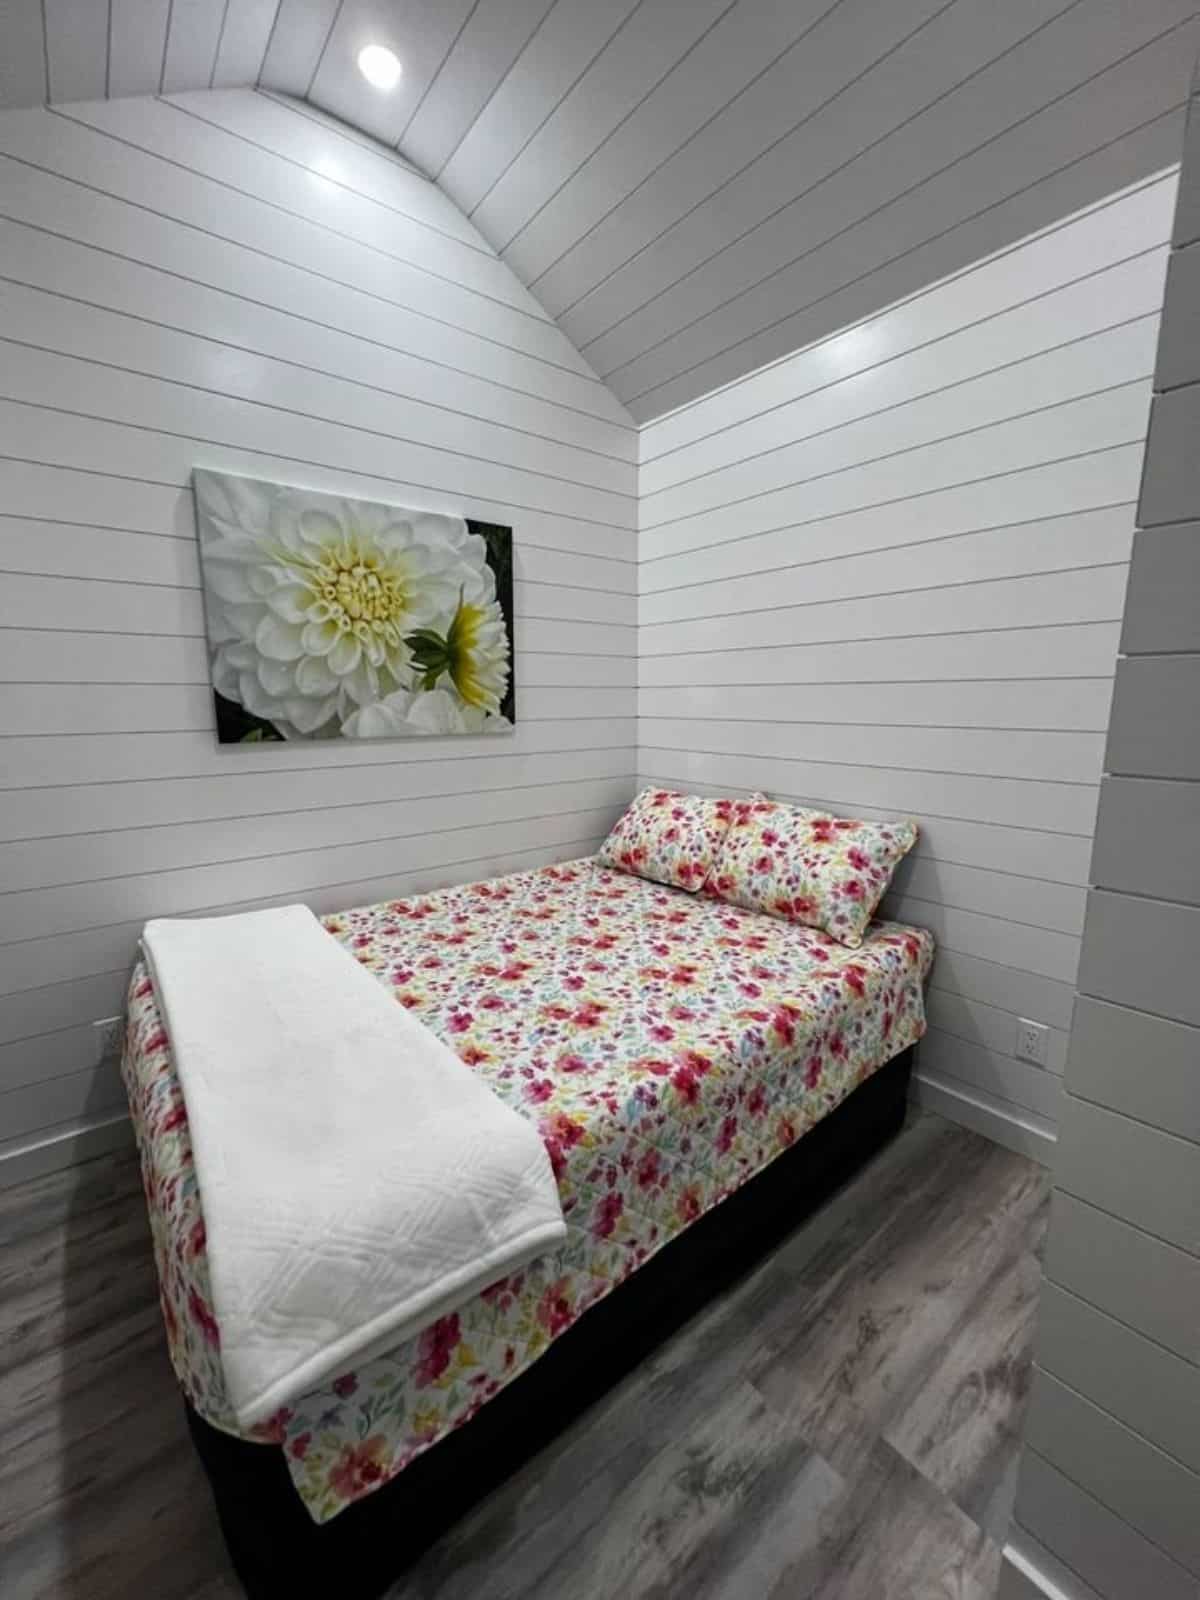 queen bed in bedroom of 26’ tiny home